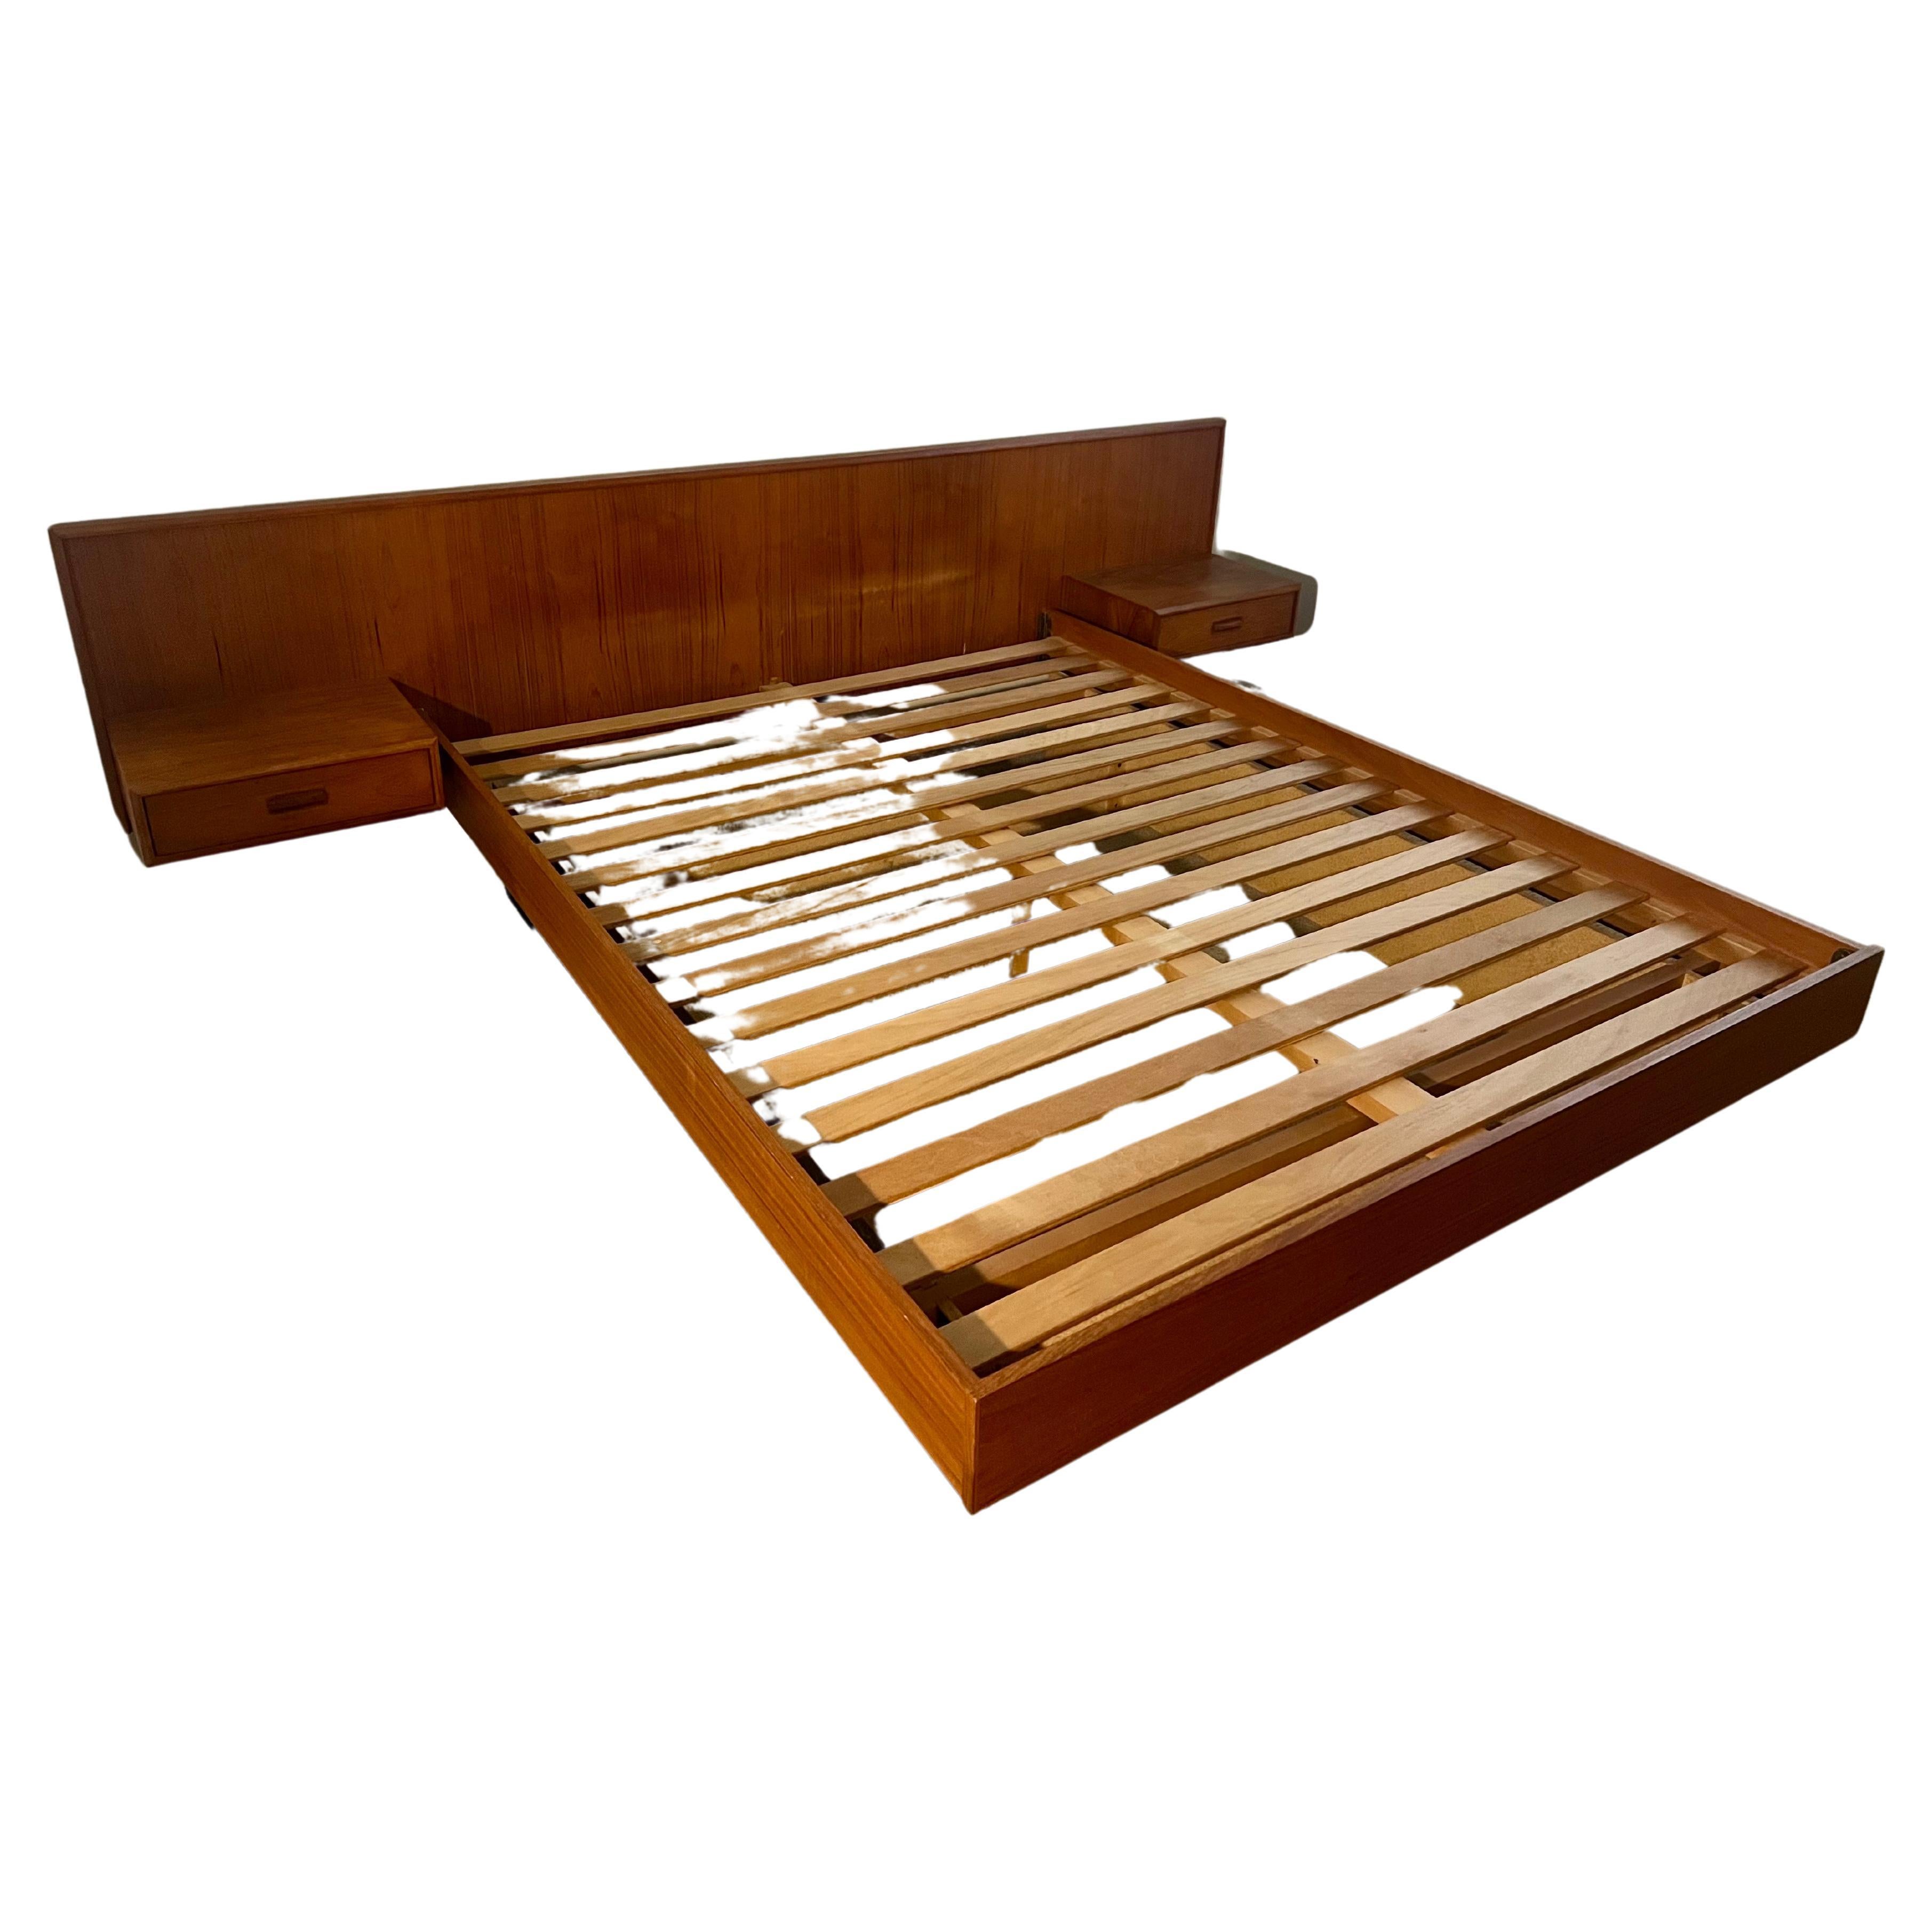 Canadian Danish Modern Teak Queen Platform Bed with Floating Nightstands For Sale